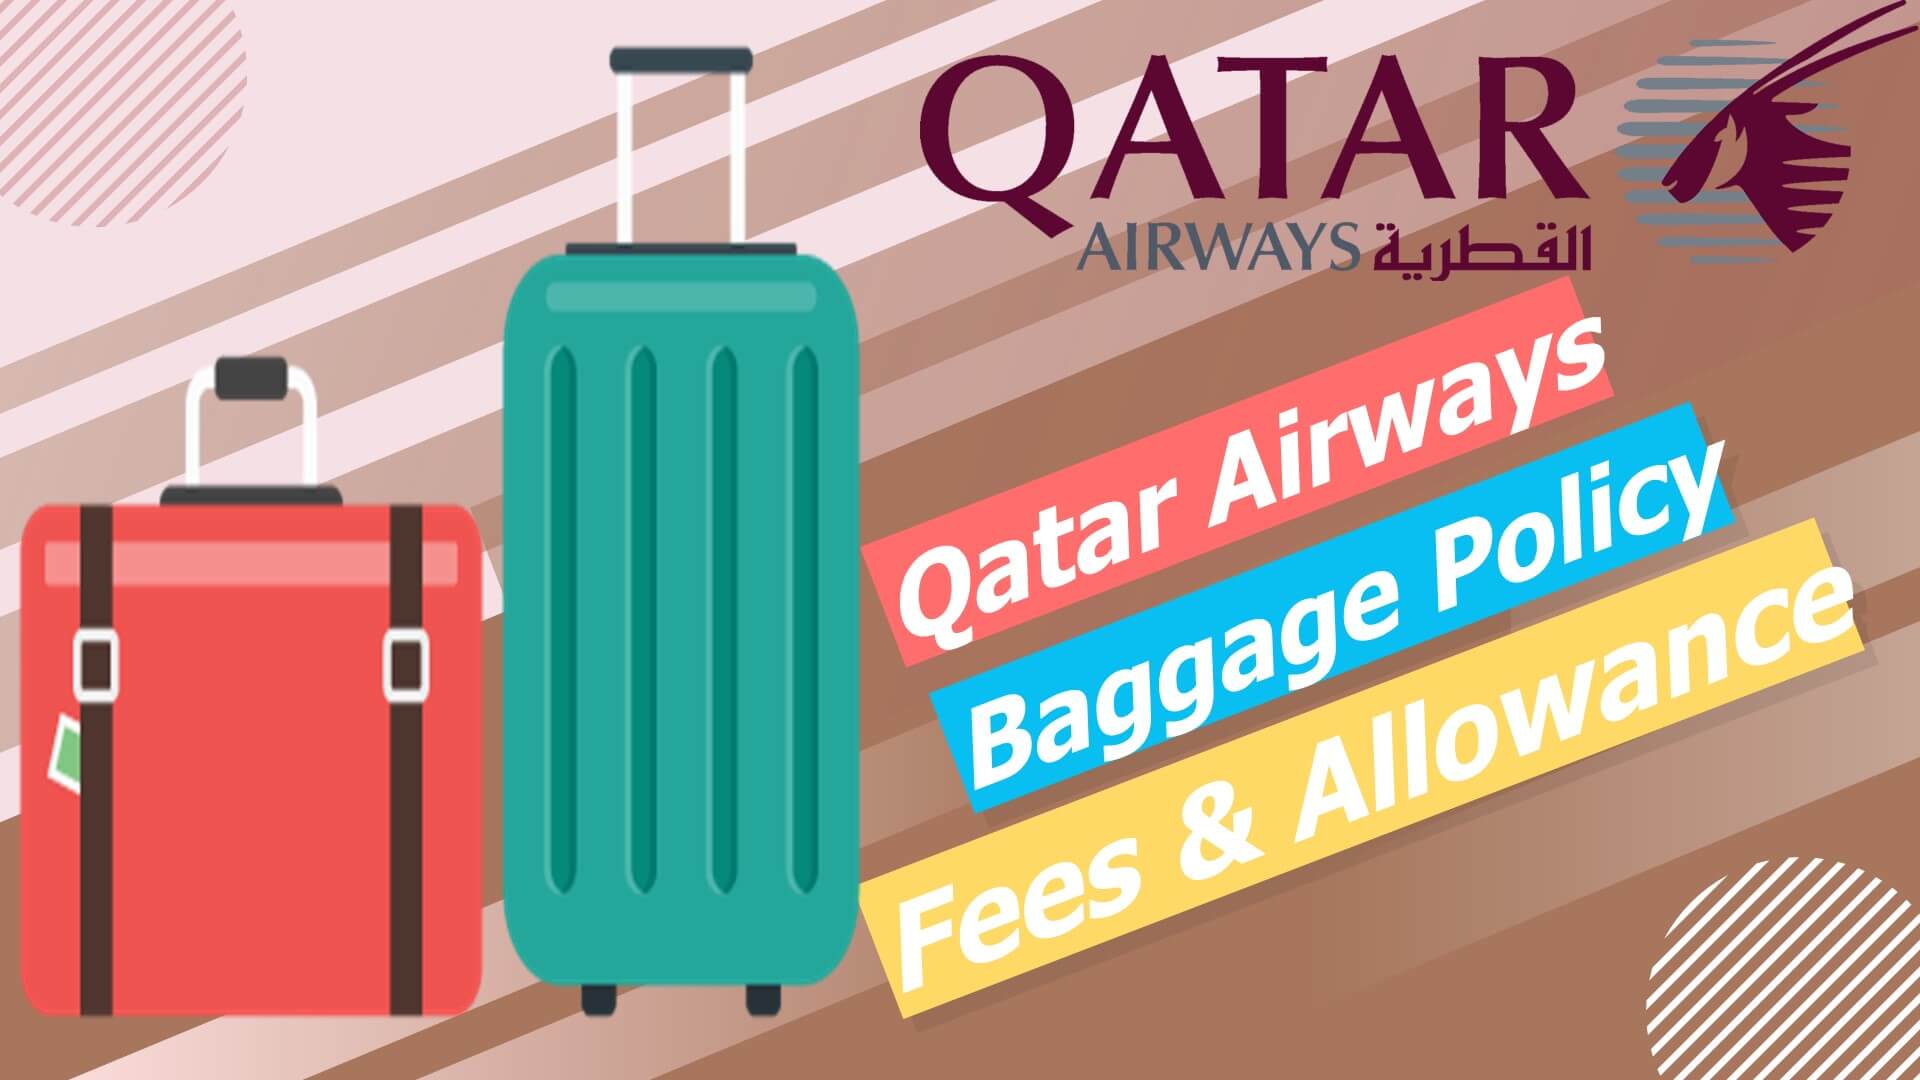 Qatar Airways Baggage Policy - Fees & Allowance